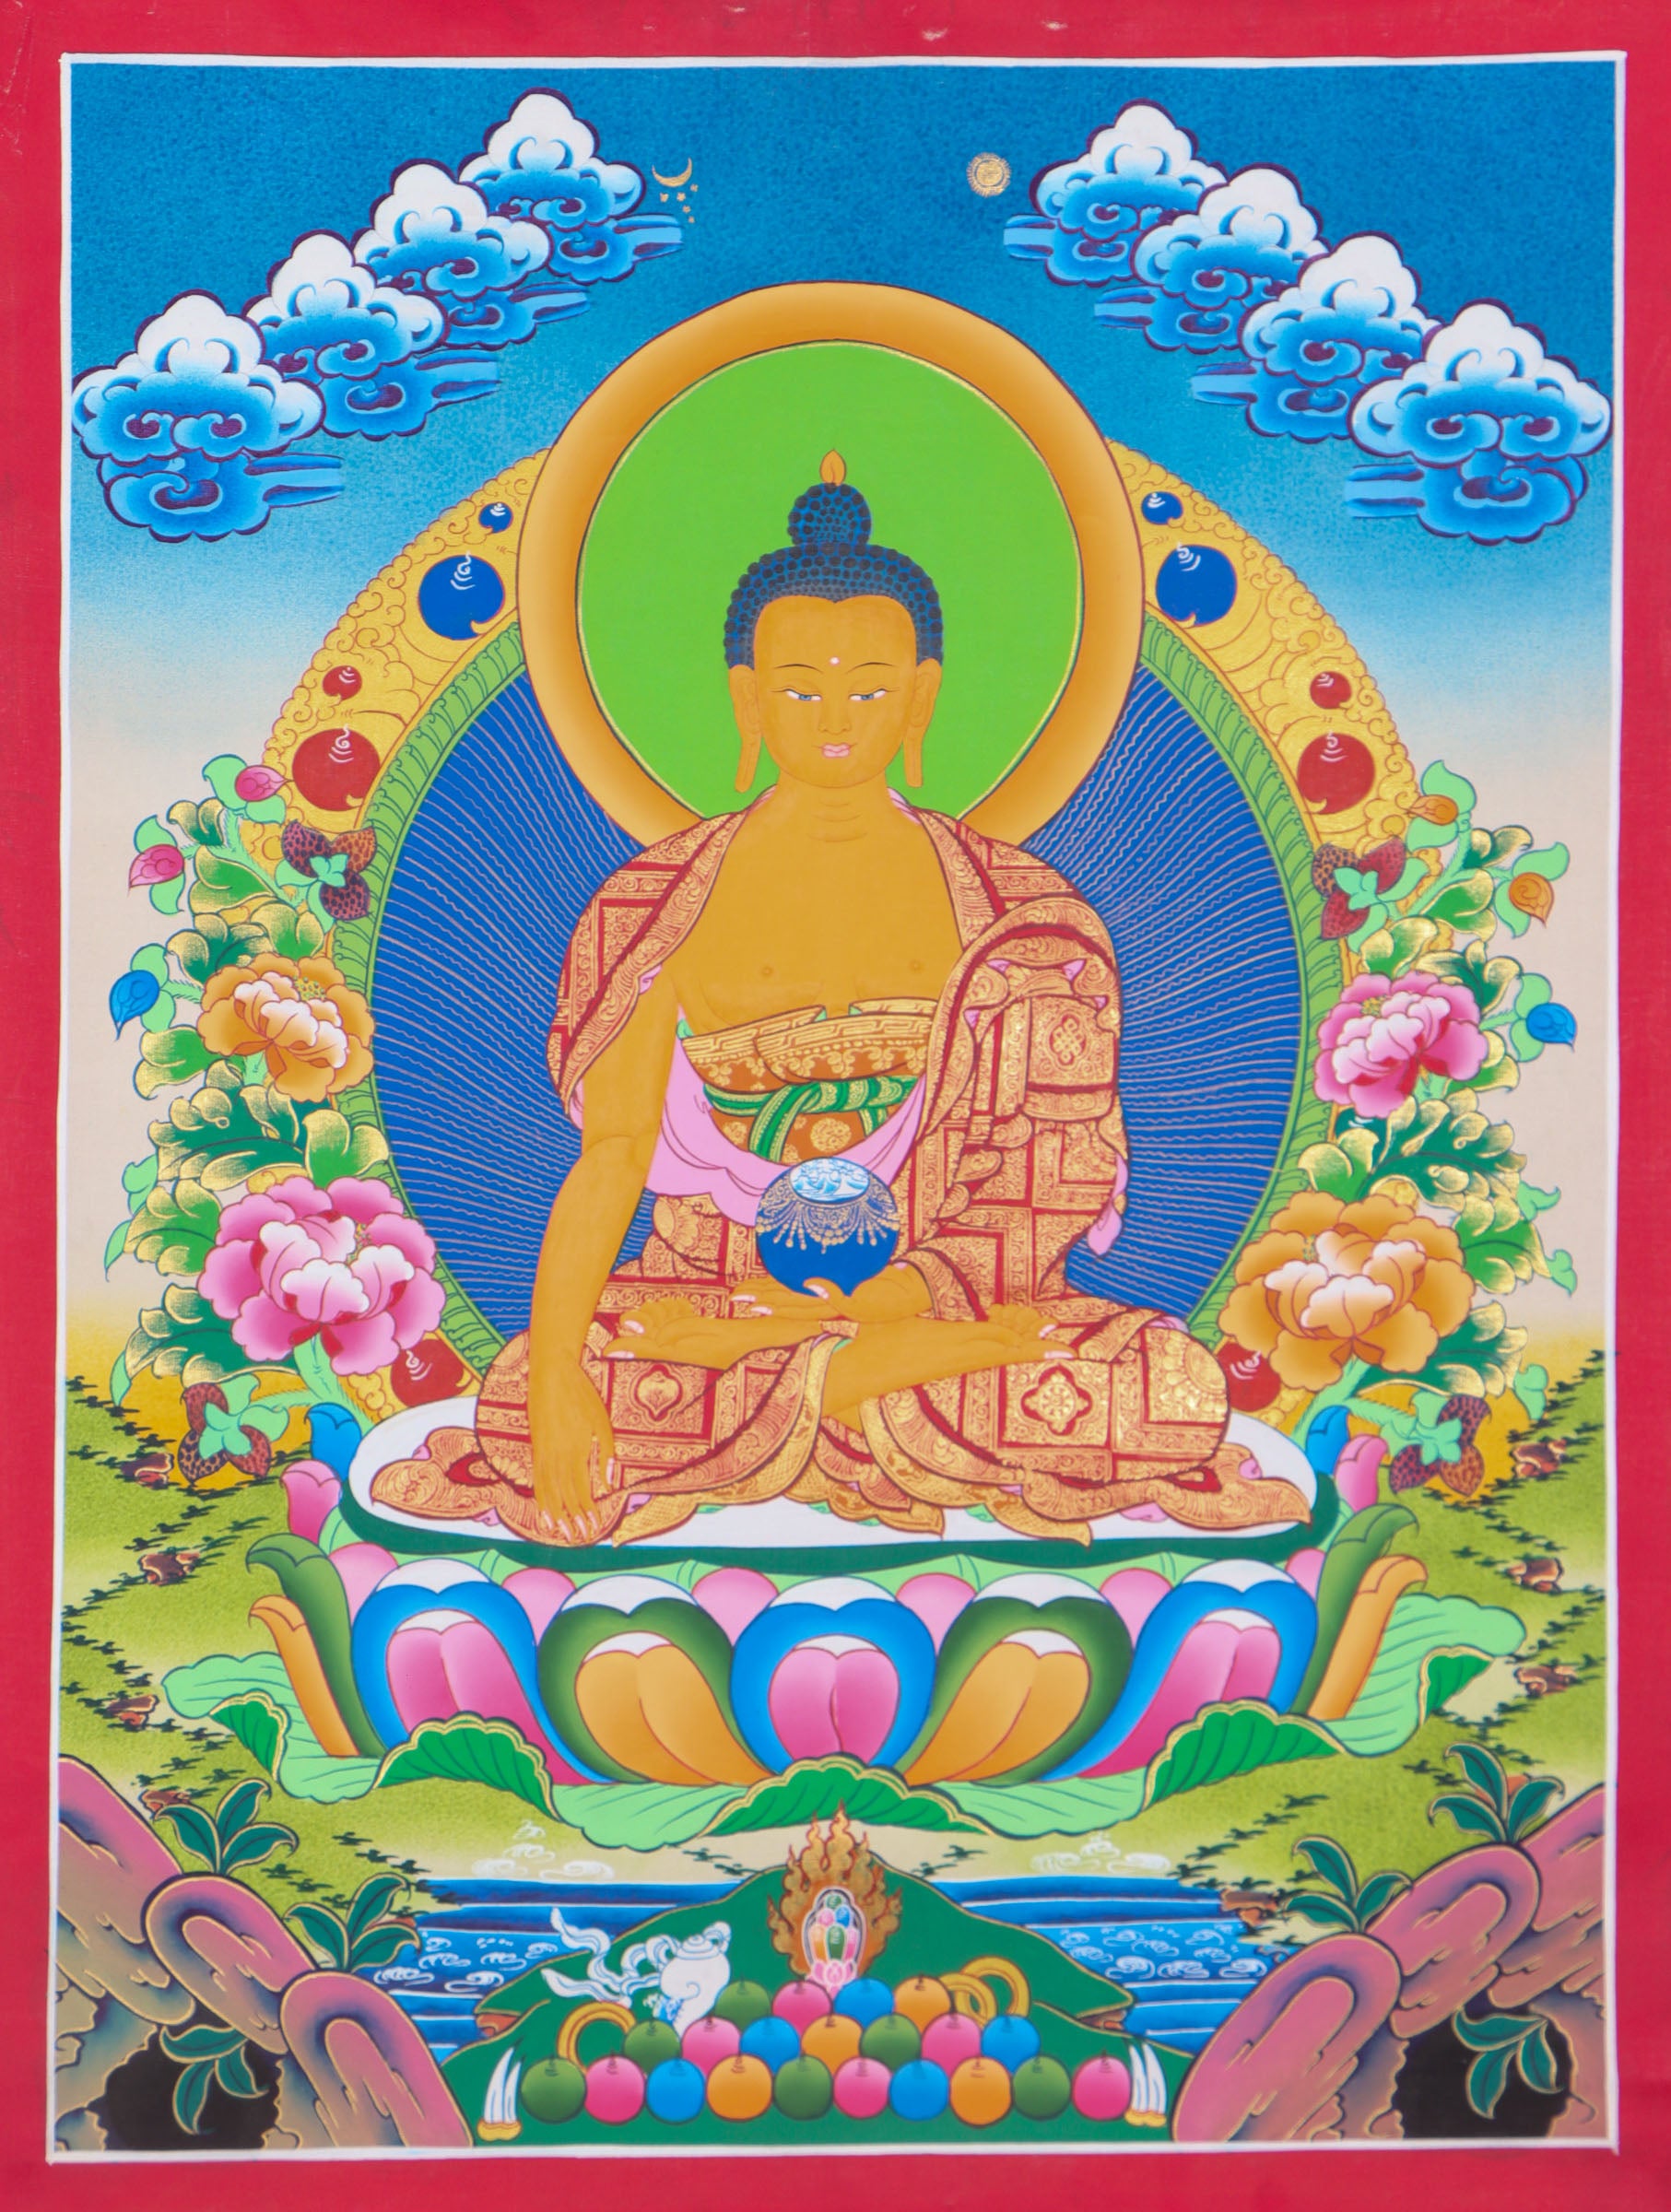 Shakyamuni Buddha Thangka Painting for meditation practices.